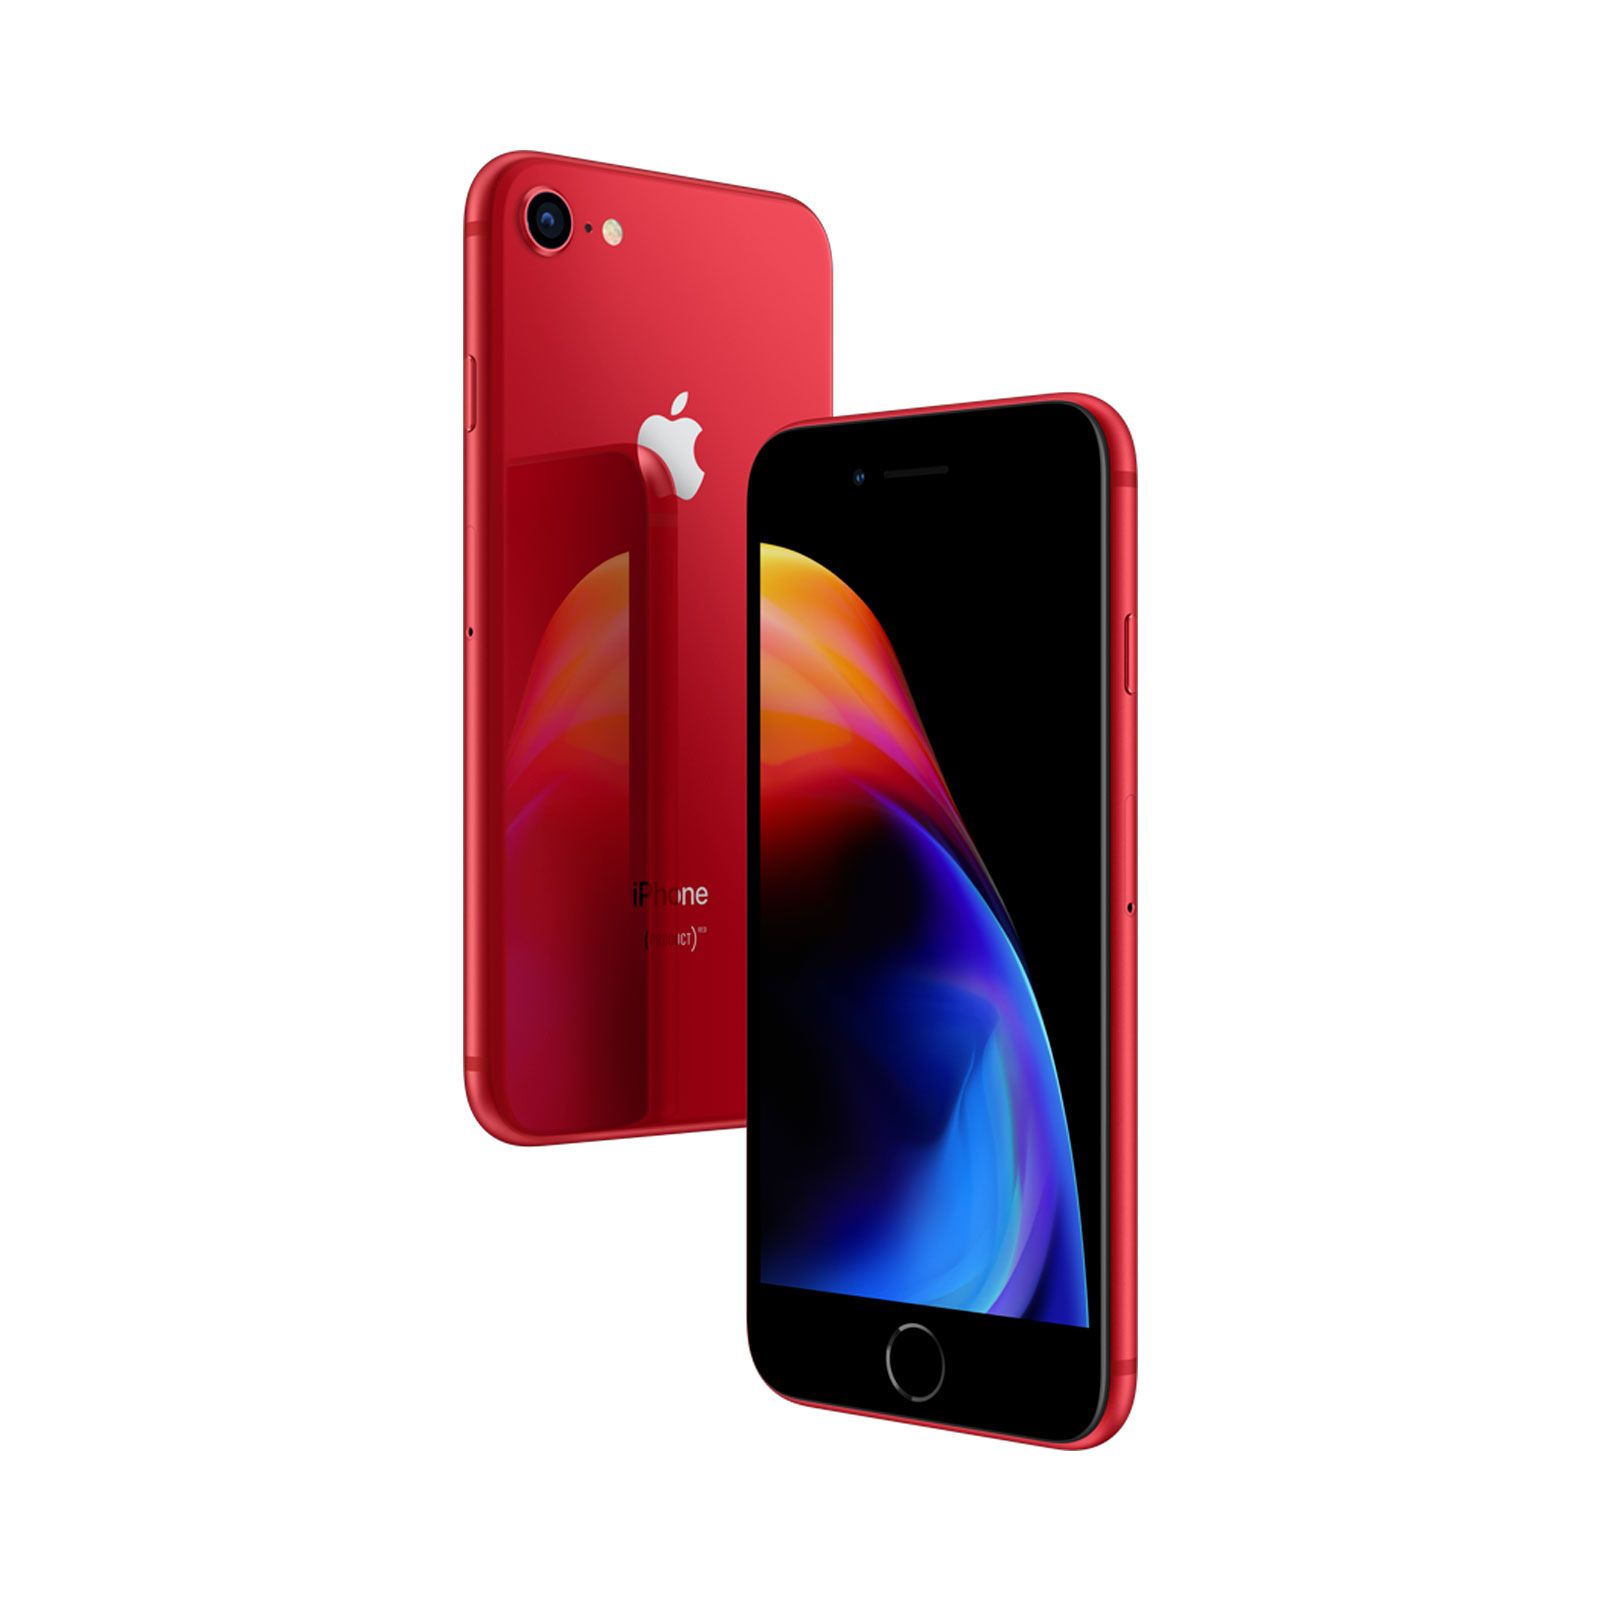 Apple iPhone 8, 256GB, (PRODUCT)RED, Trieda B - použité, záruka 12 mesiacov